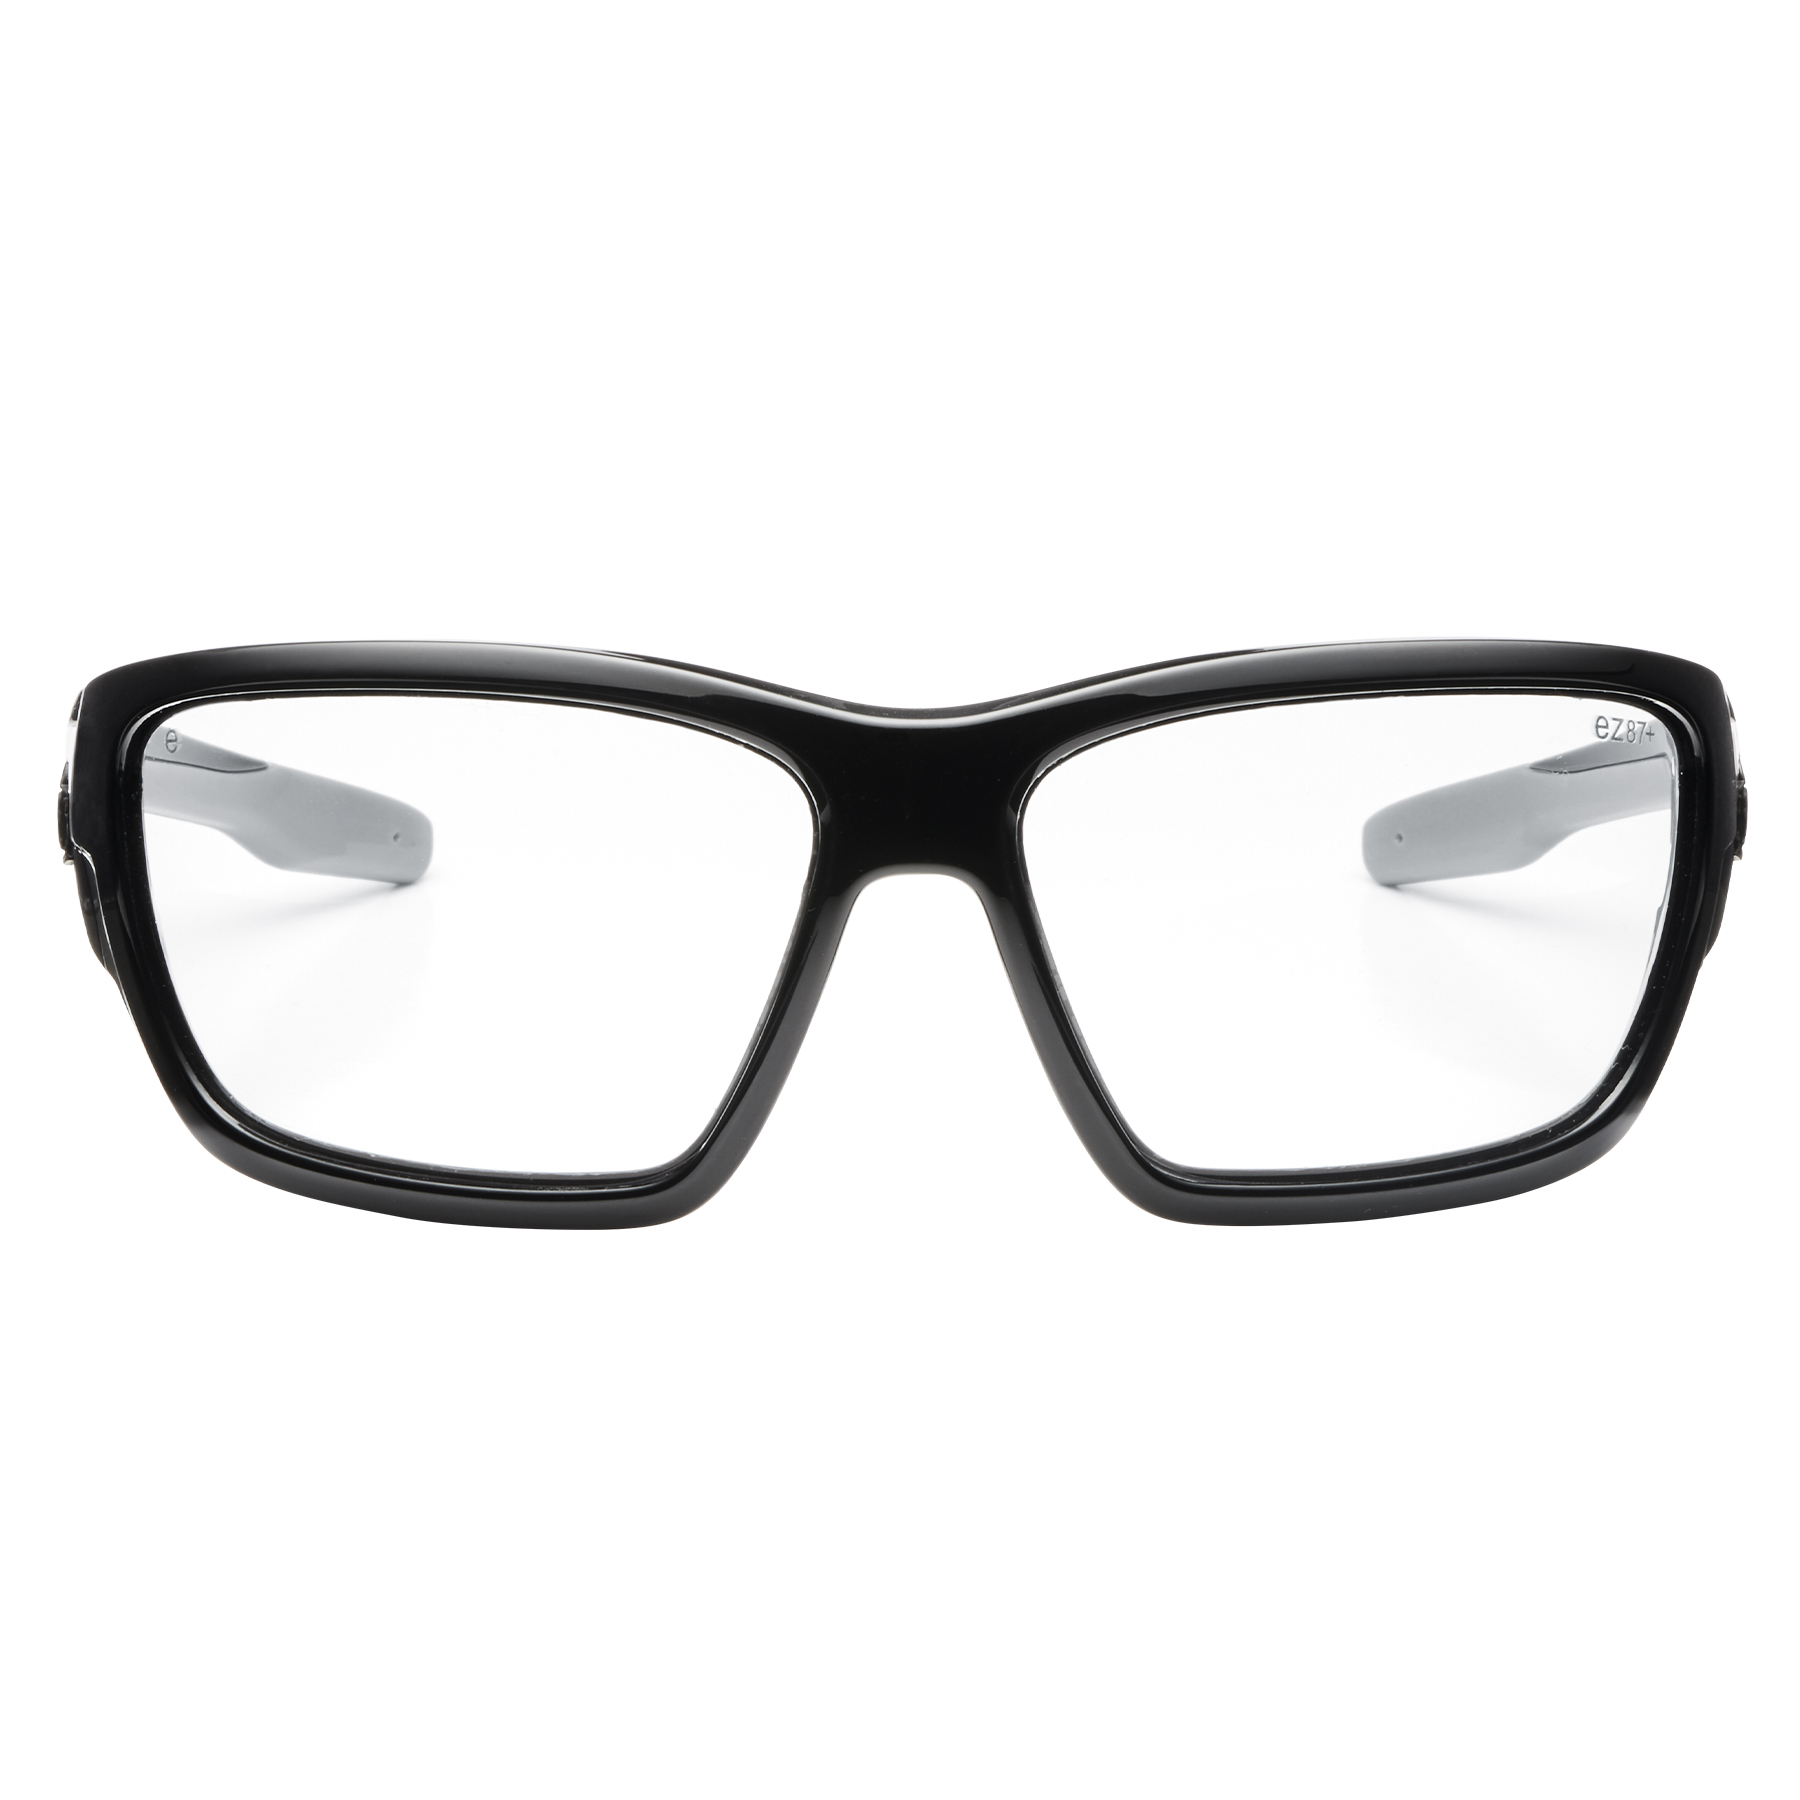 Baldr Anti-Fog Safety Glasses, Full Frame